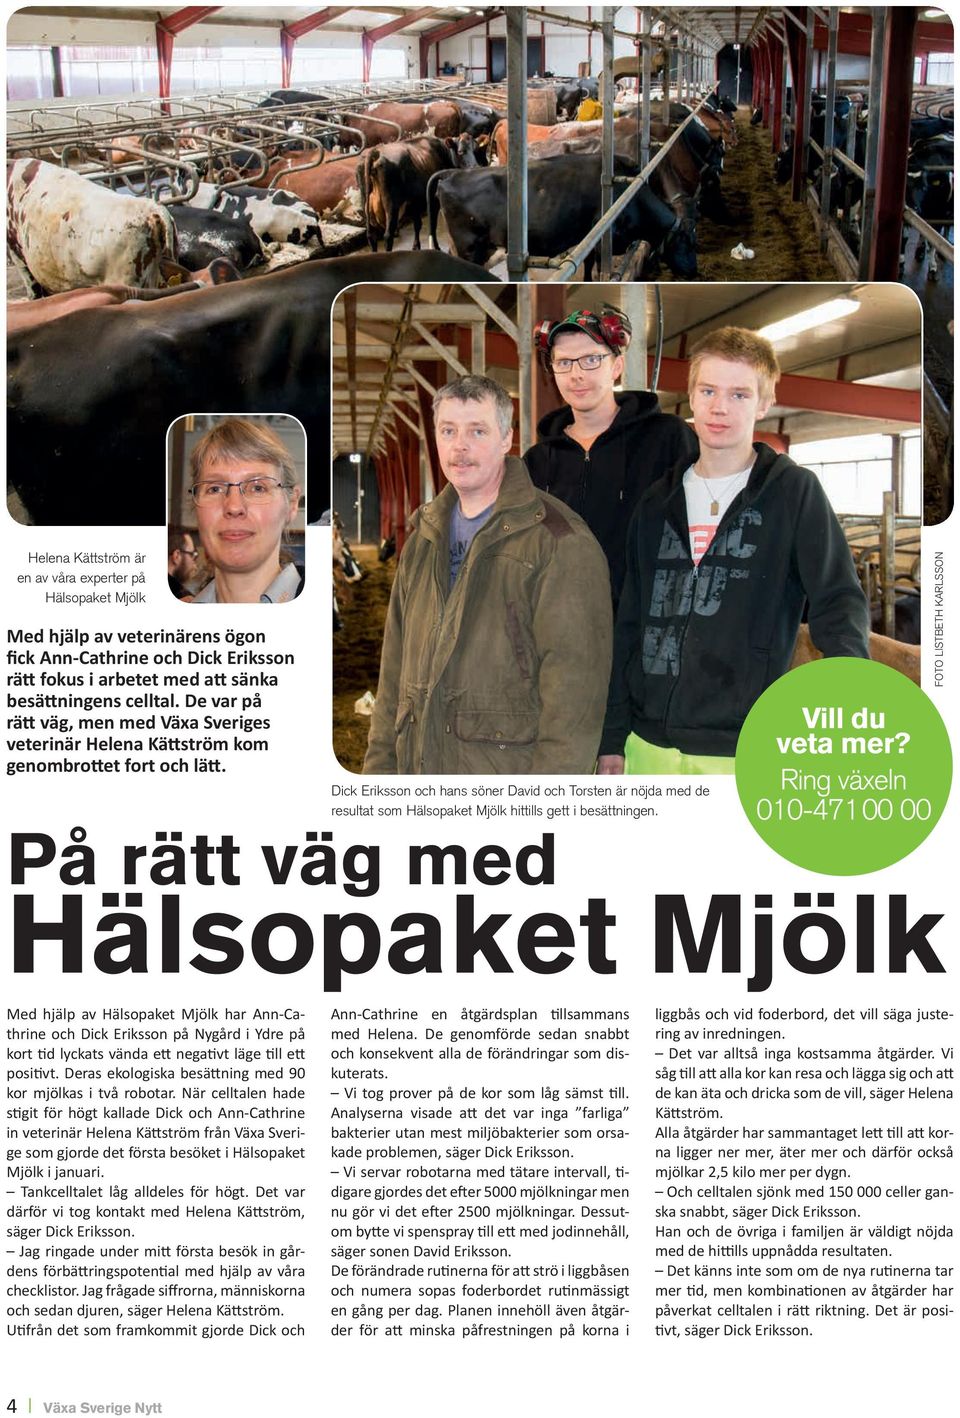 Dick Eriksson och hans söner David och Torsten är nöjda med de resultat som Hälsopaket Mjölk hittills gett i besättningen. Vill du veta mer?